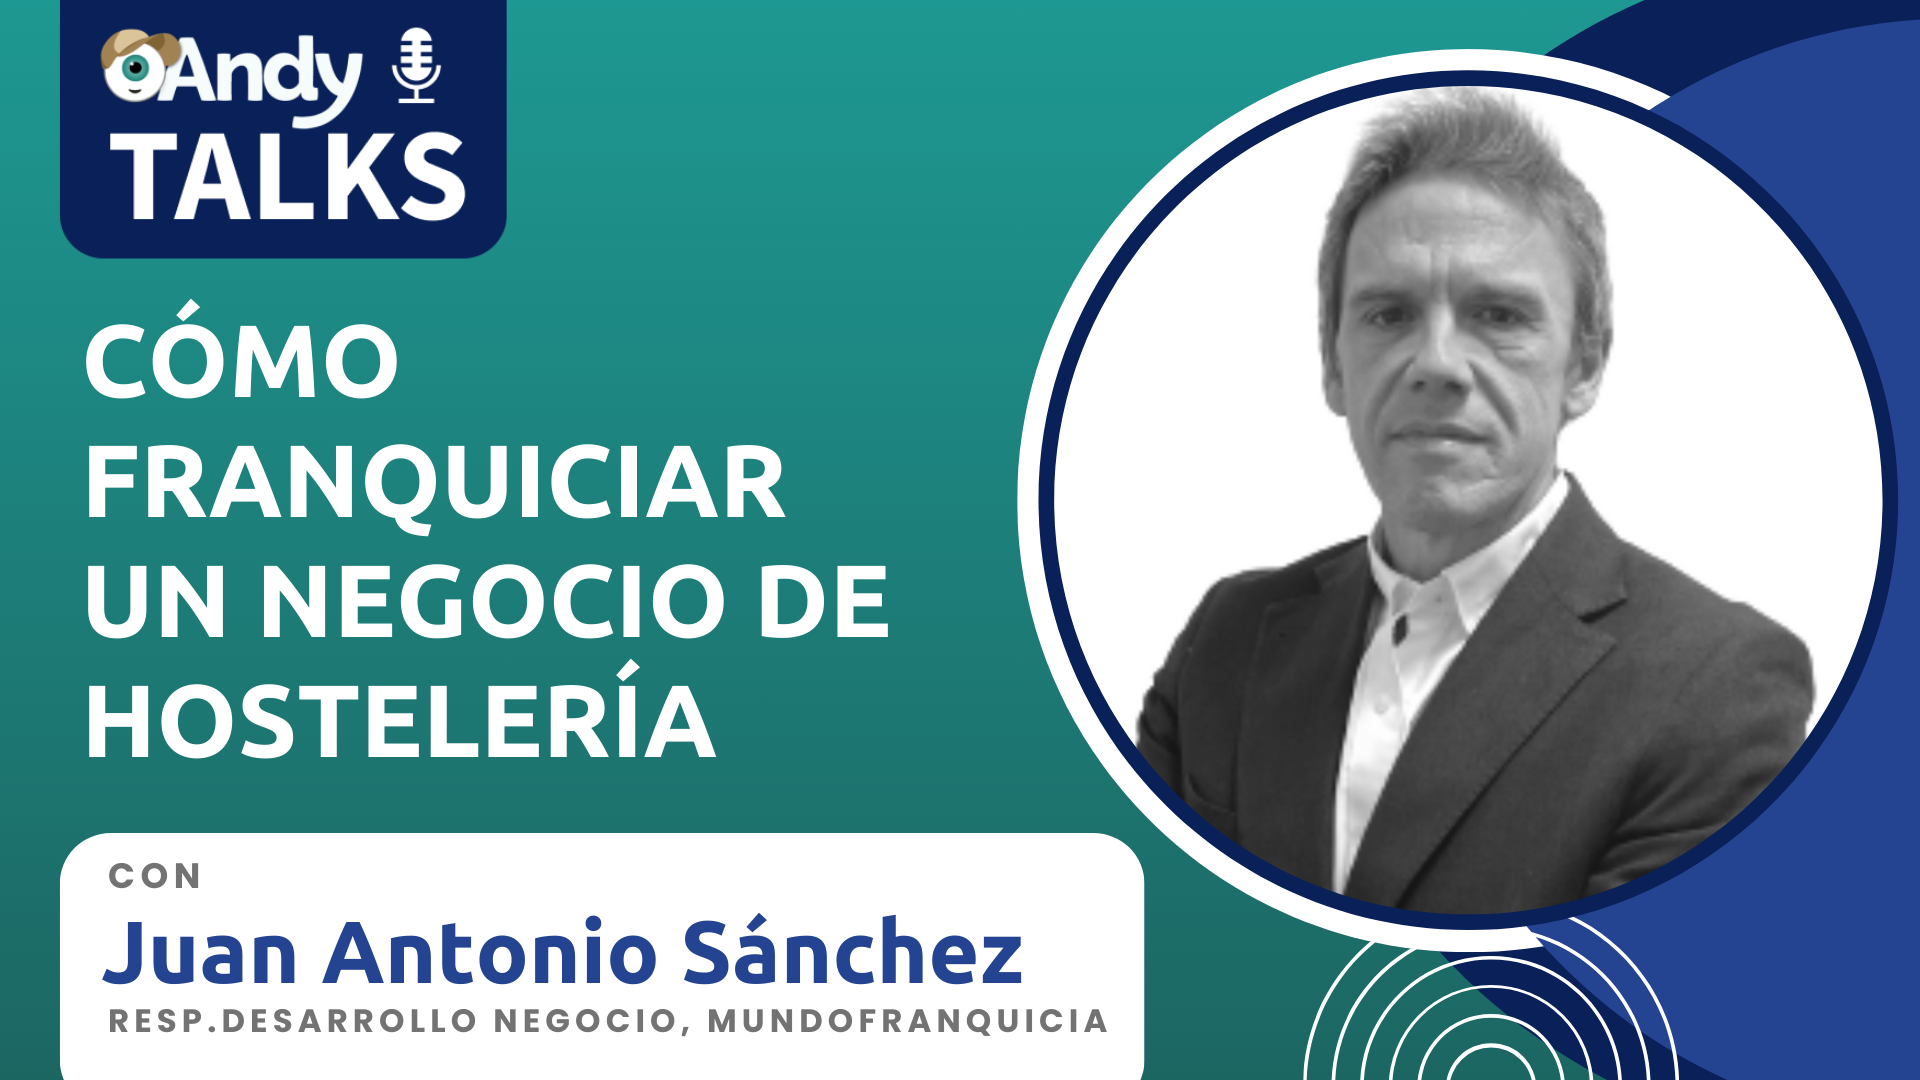 Juan Antonio Sánchez, cómo franquiciar un negocio de hostelería